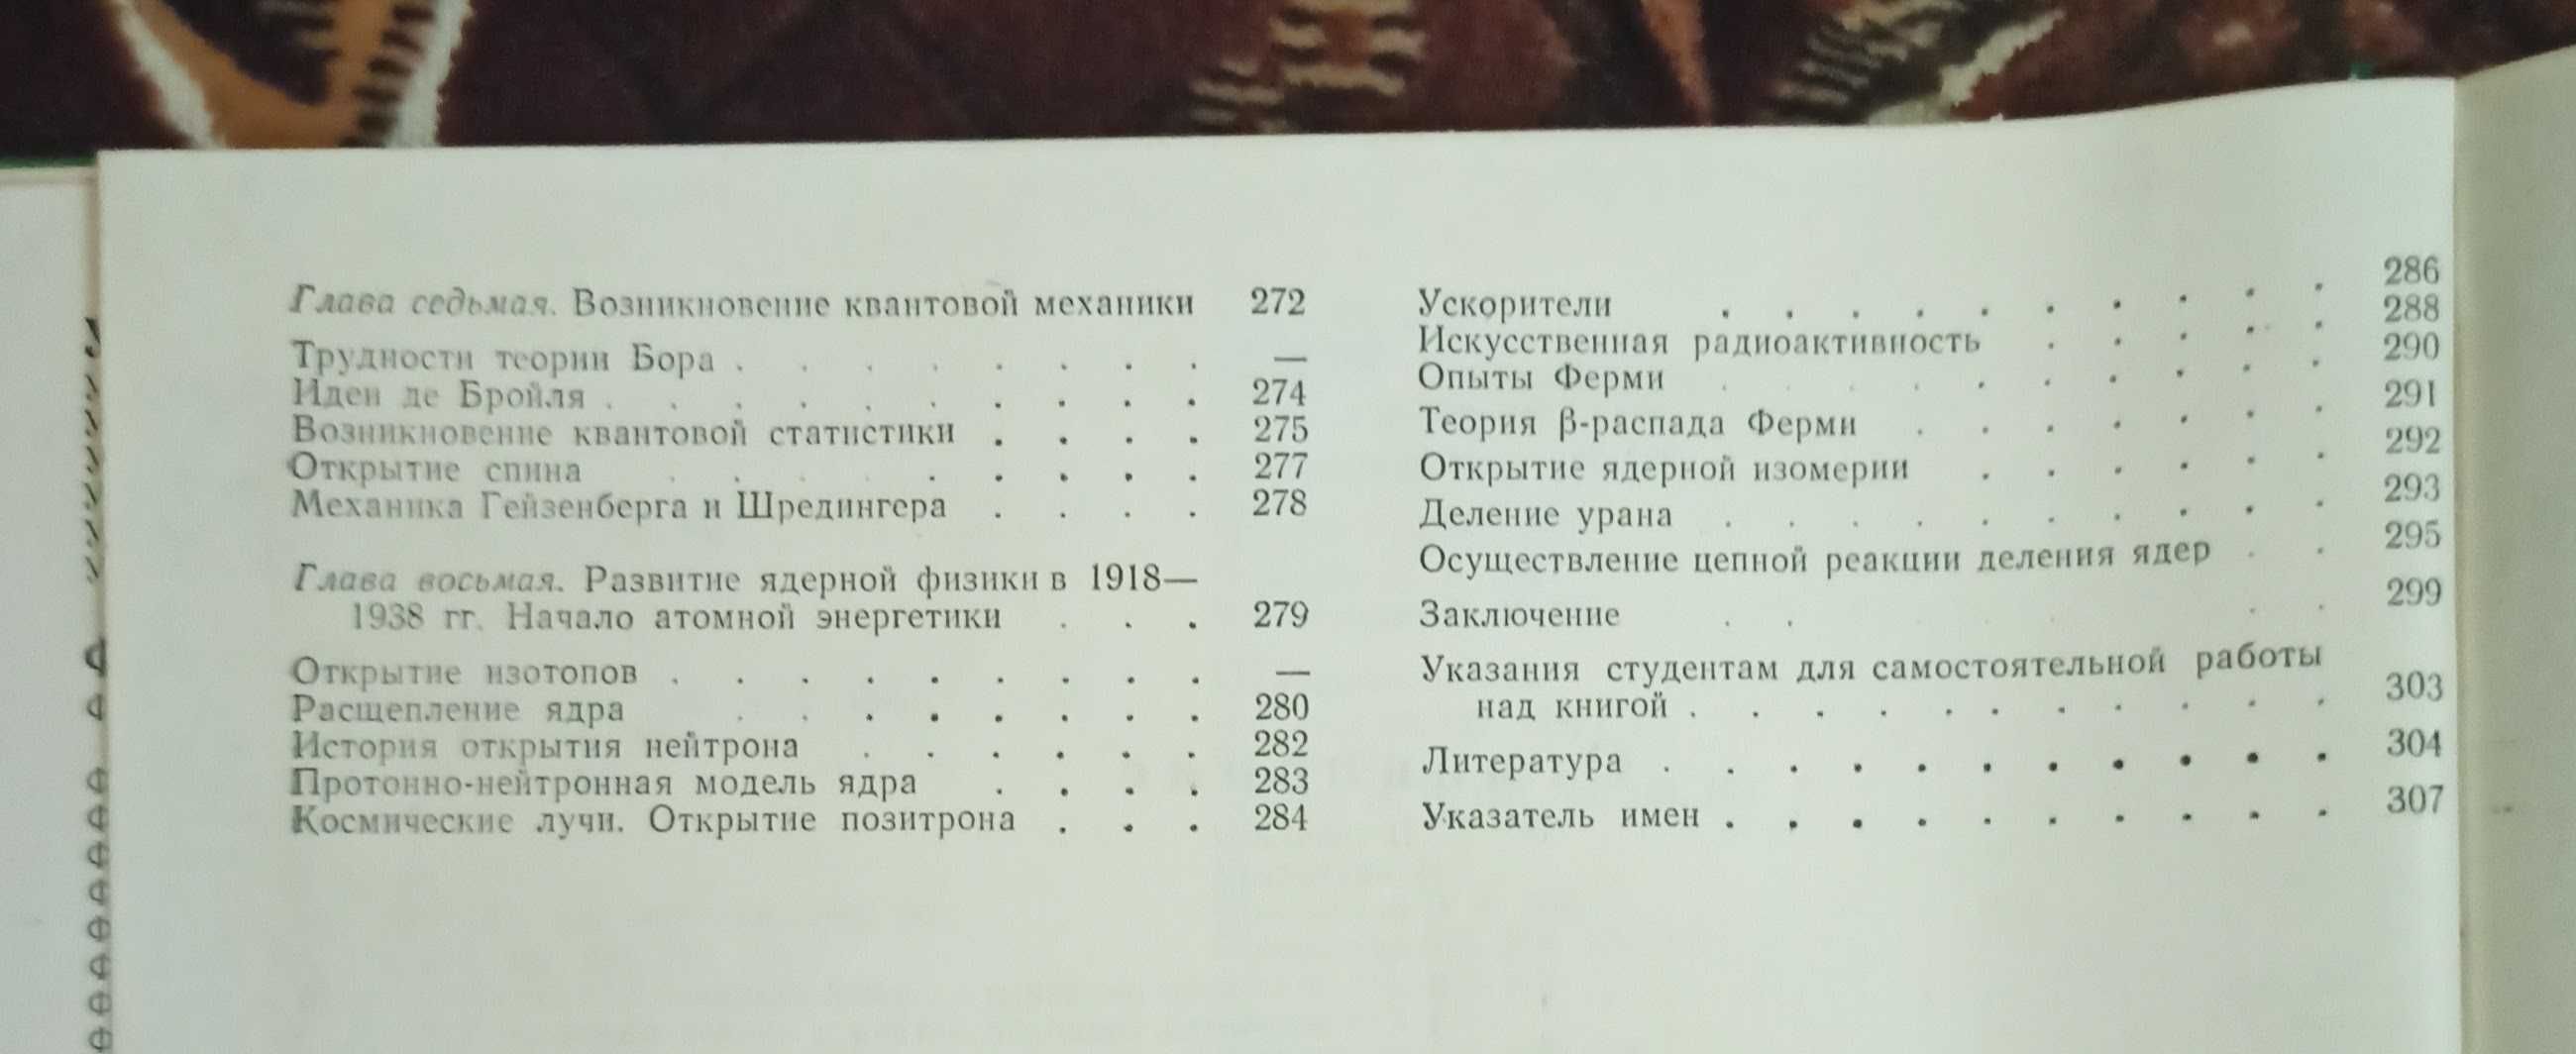 Посібник для учнів П. С. Кудрявцев "Курс истории физики" 1974 рік